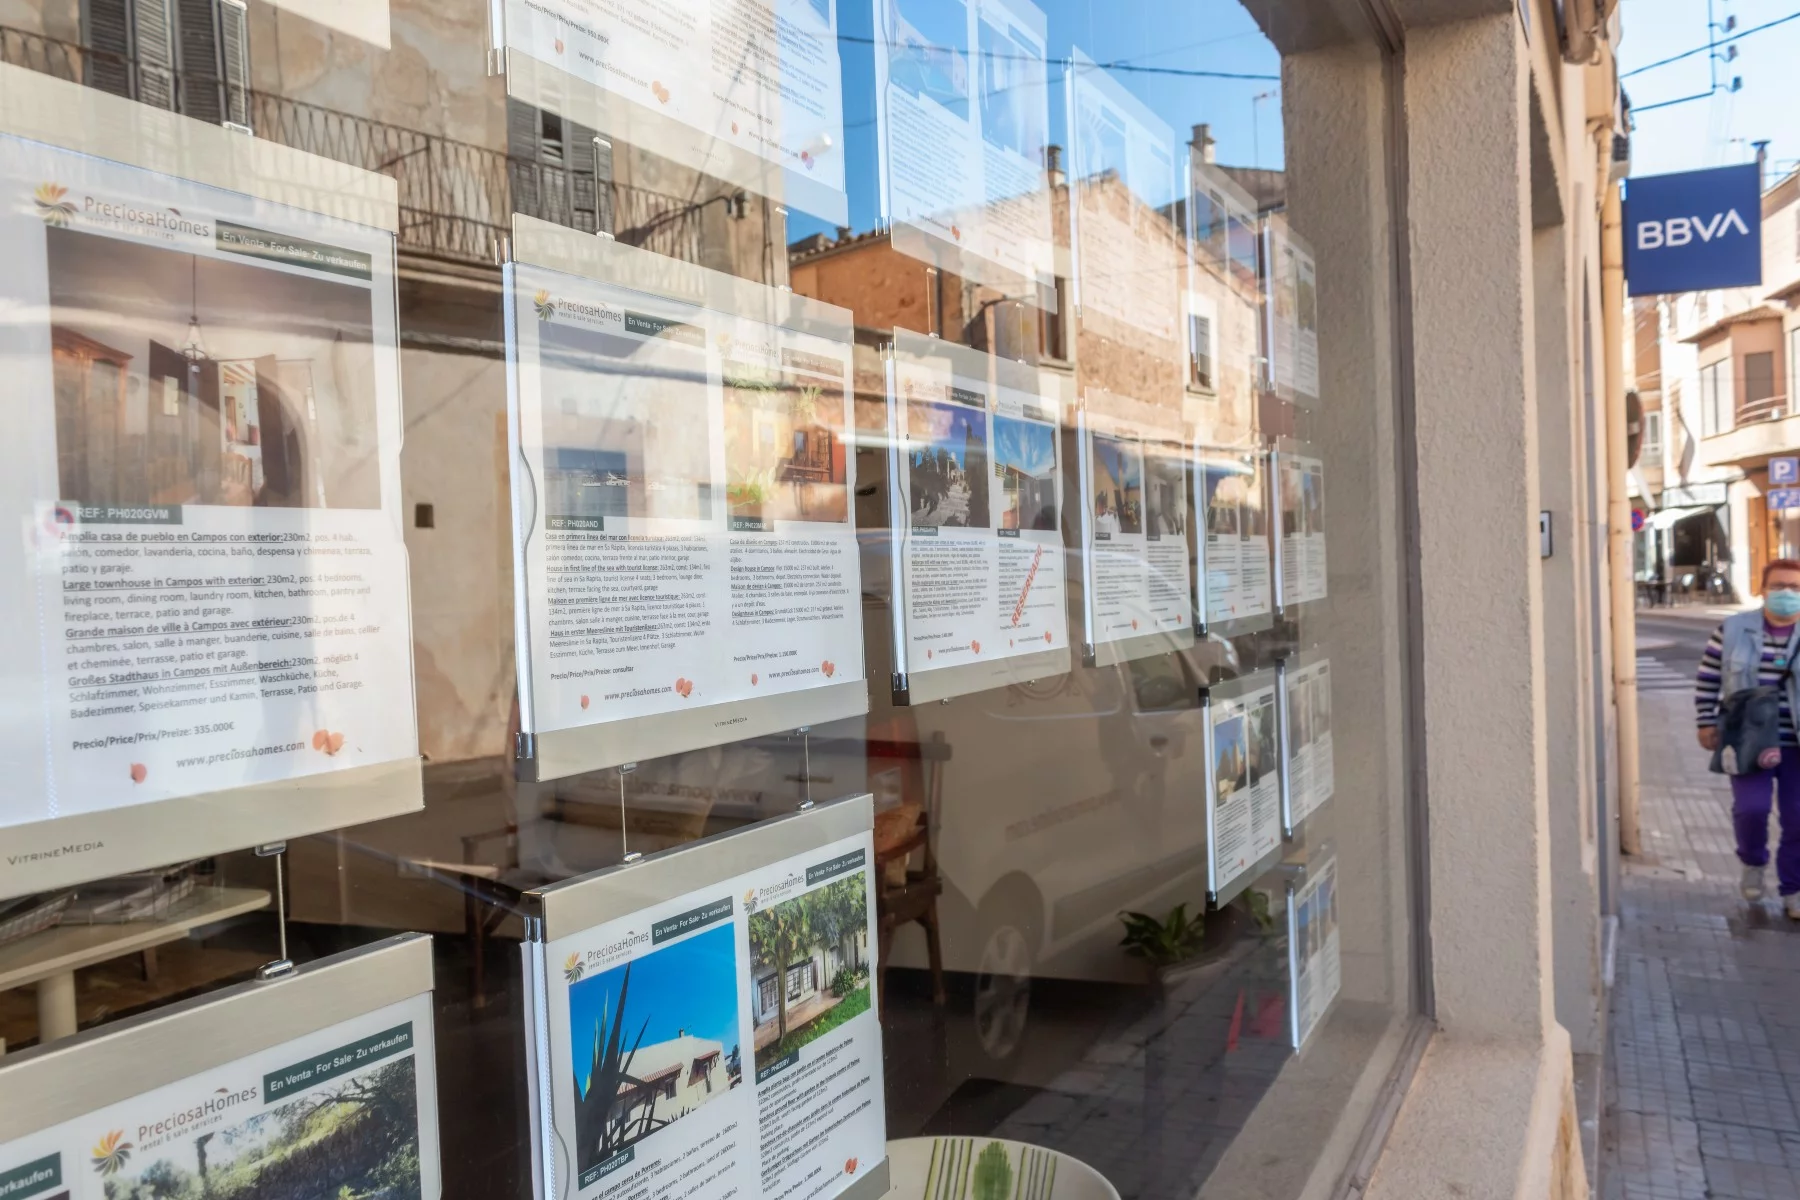 real estate listings spain, window advertisements